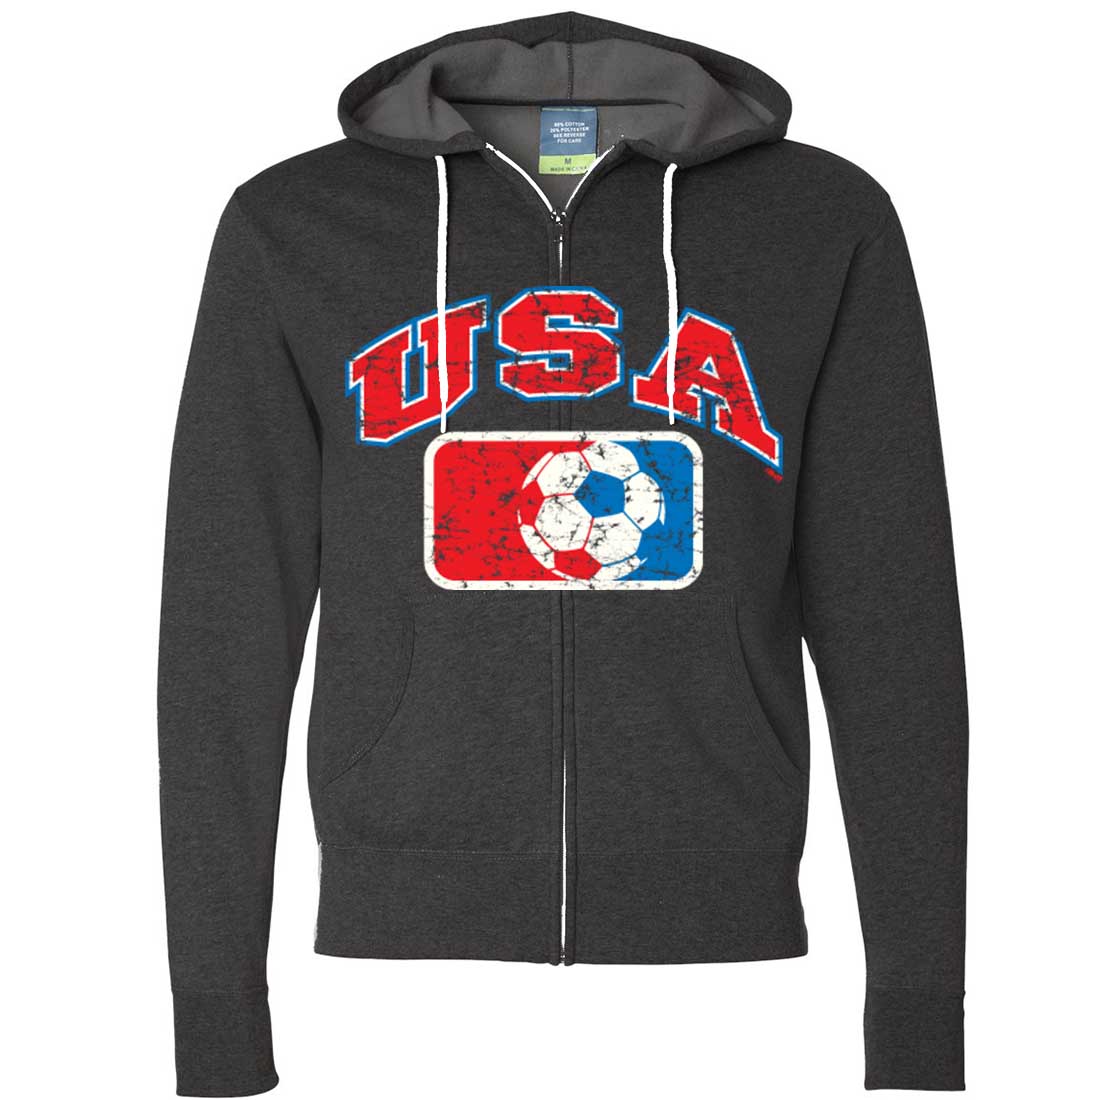 USA Vintage Soccer Team Zip-Up Hoodie | eBay